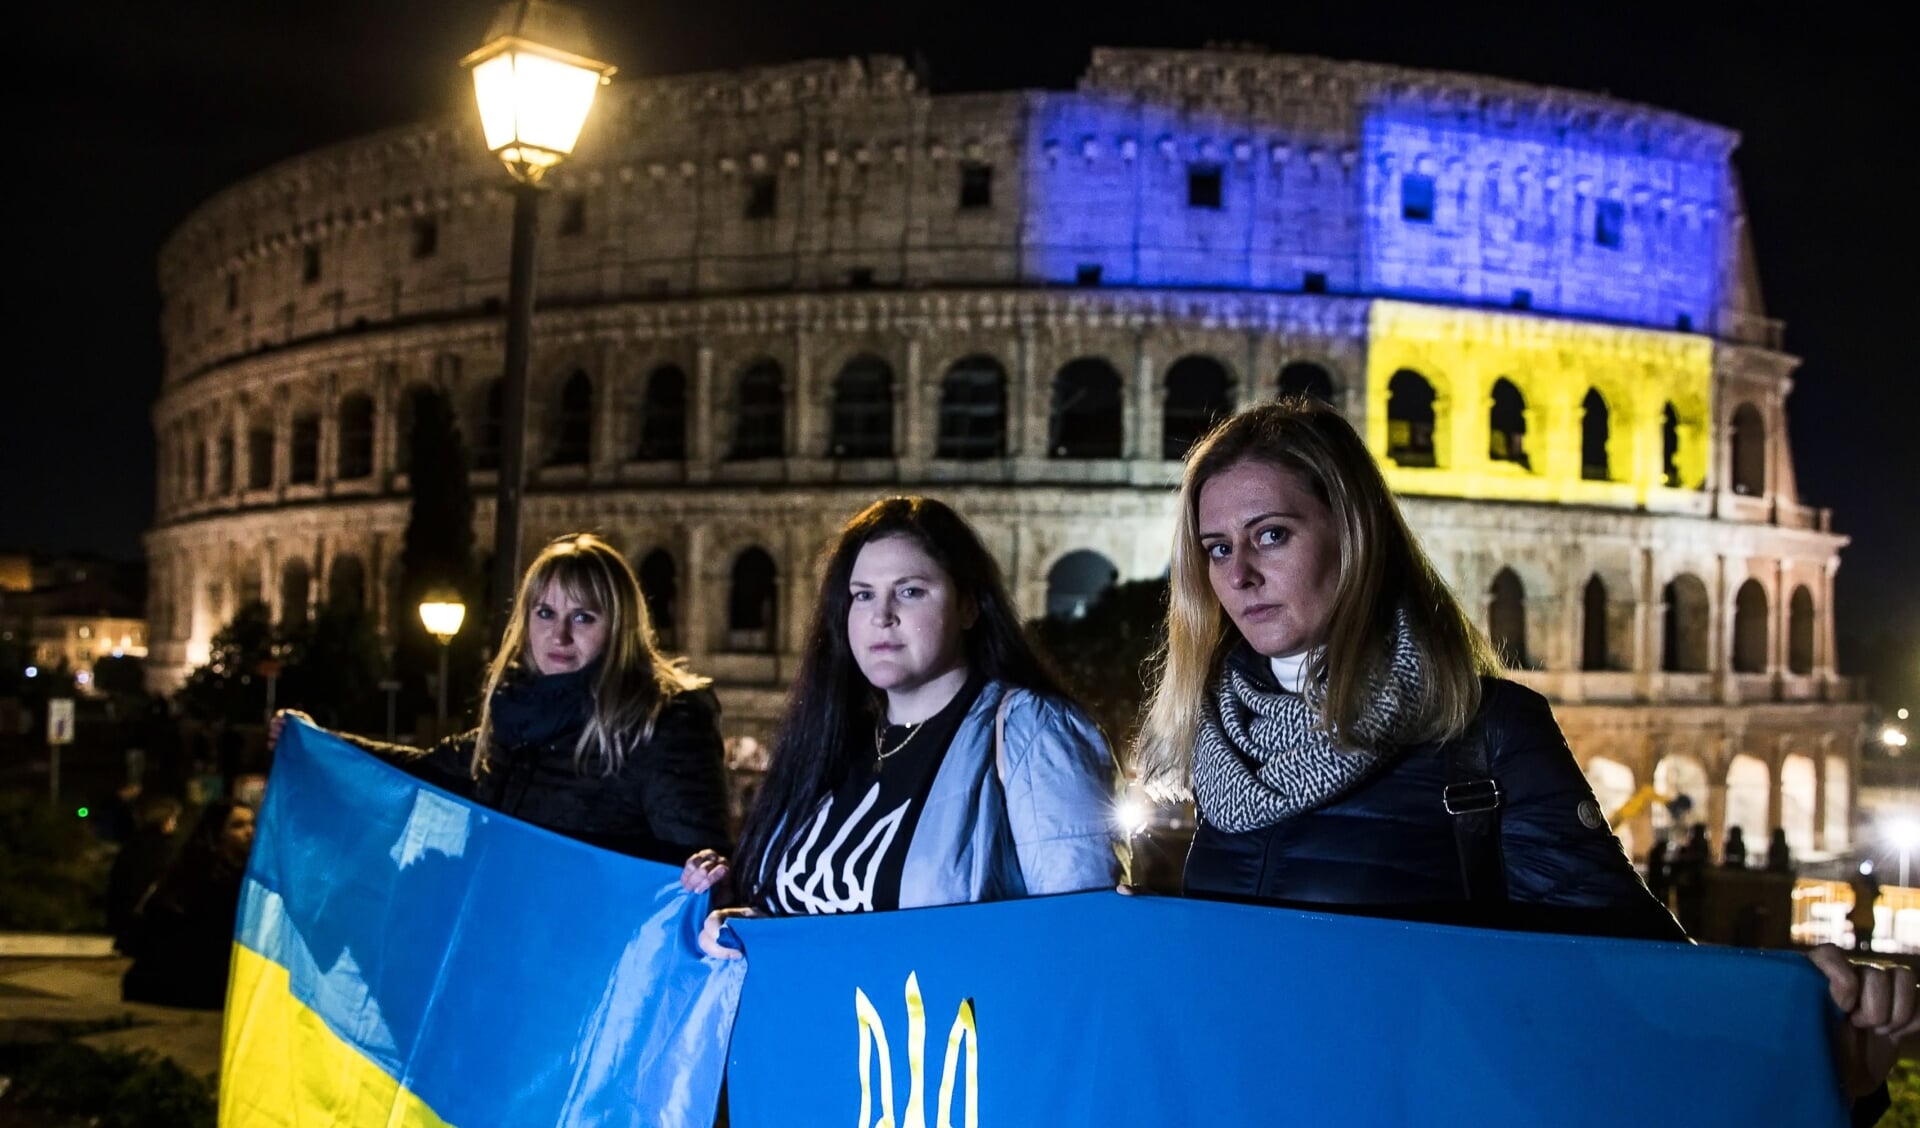 Op 23 februari protesteerden duizenden Romeinen bij het Colosseum uit solidariteit met Oekraïne. Op Goede Vrijdag zal paus Franciscus er voorgaan in de Kruisweg die het lijden en sterven van Jezus herdenkt. Onder meer een Oekraïense en Russische vrouw zullen samen het kruis dragen. 